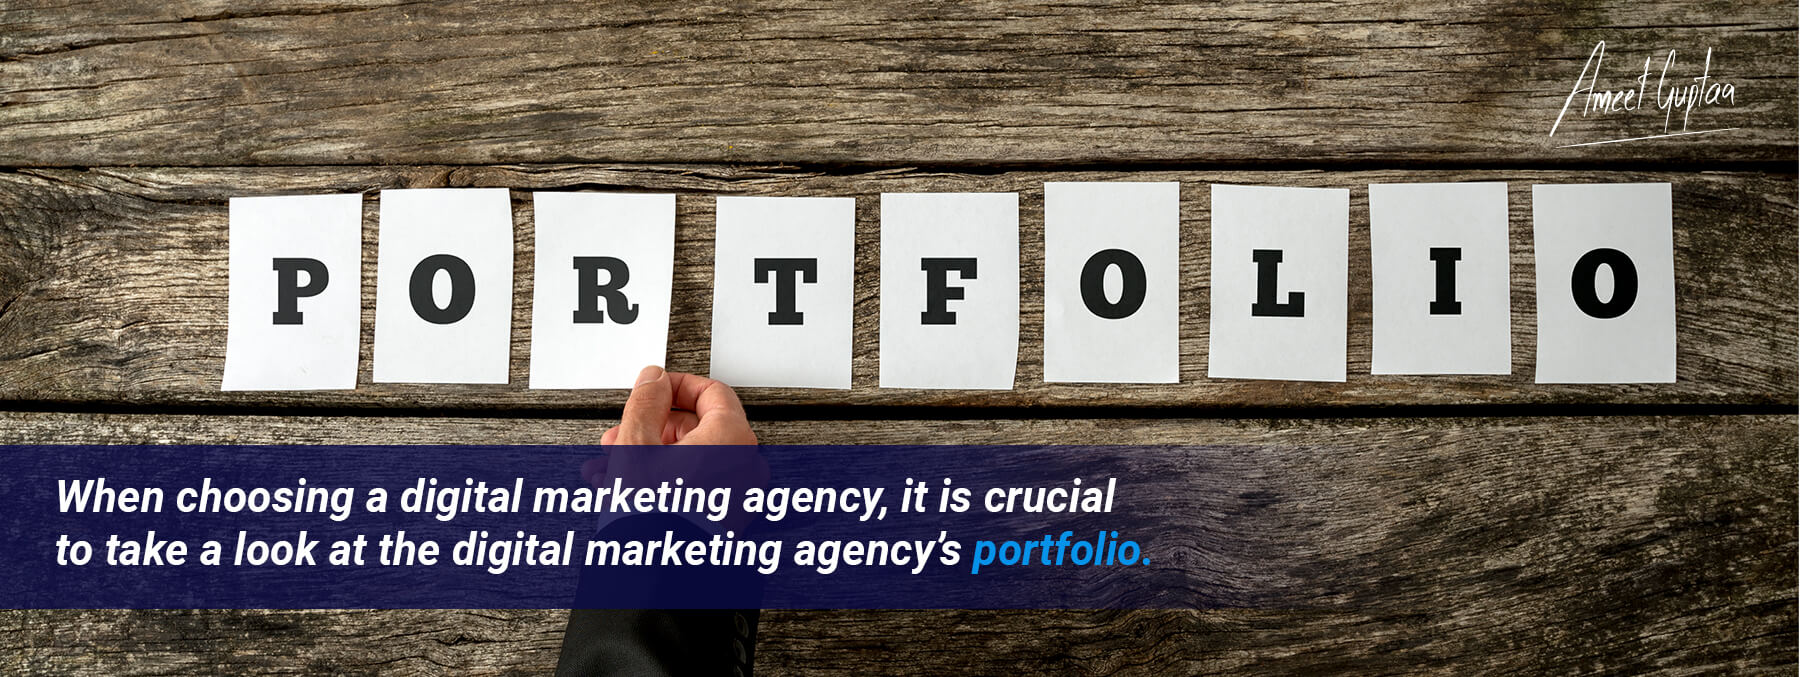 Choosing The Right Digital Marketing Agency Partner